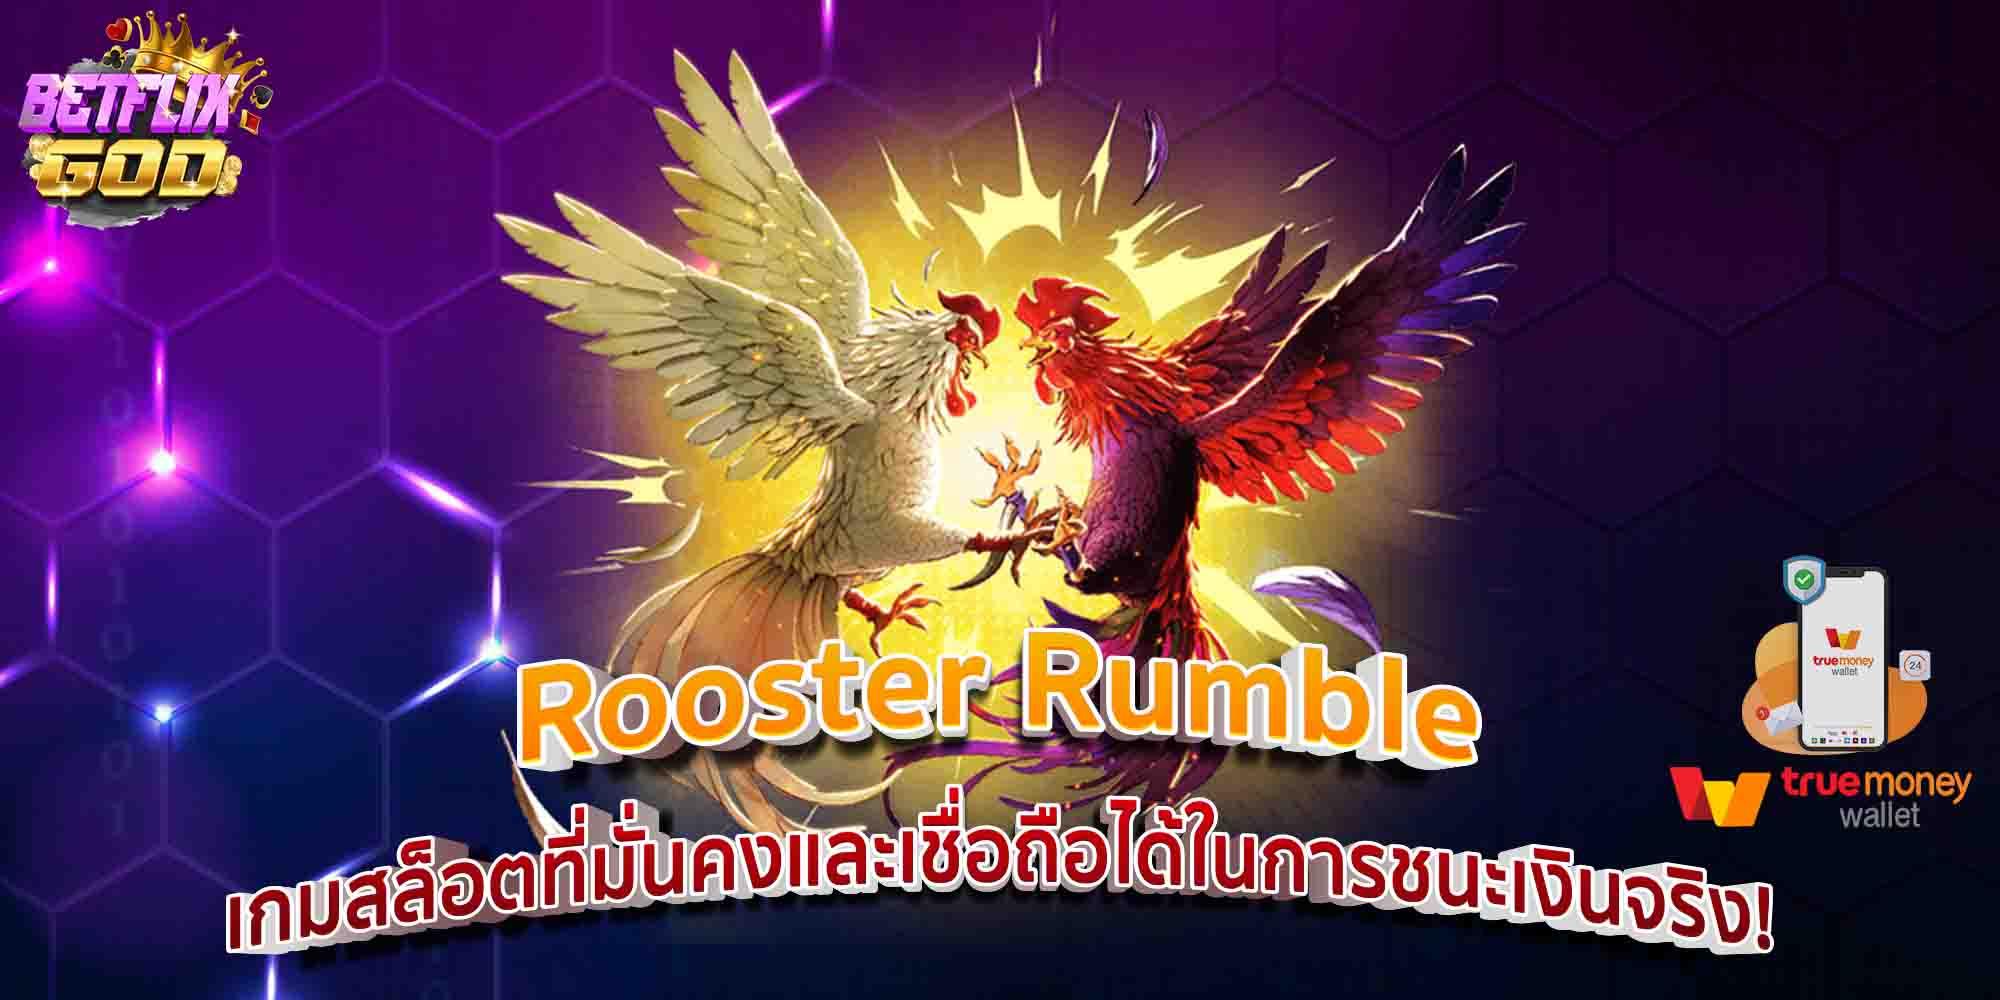 Rooster Rumble เกมสล็อตที่มั่นคงและเชื่อถือได้ในการชนะเงินจริง!